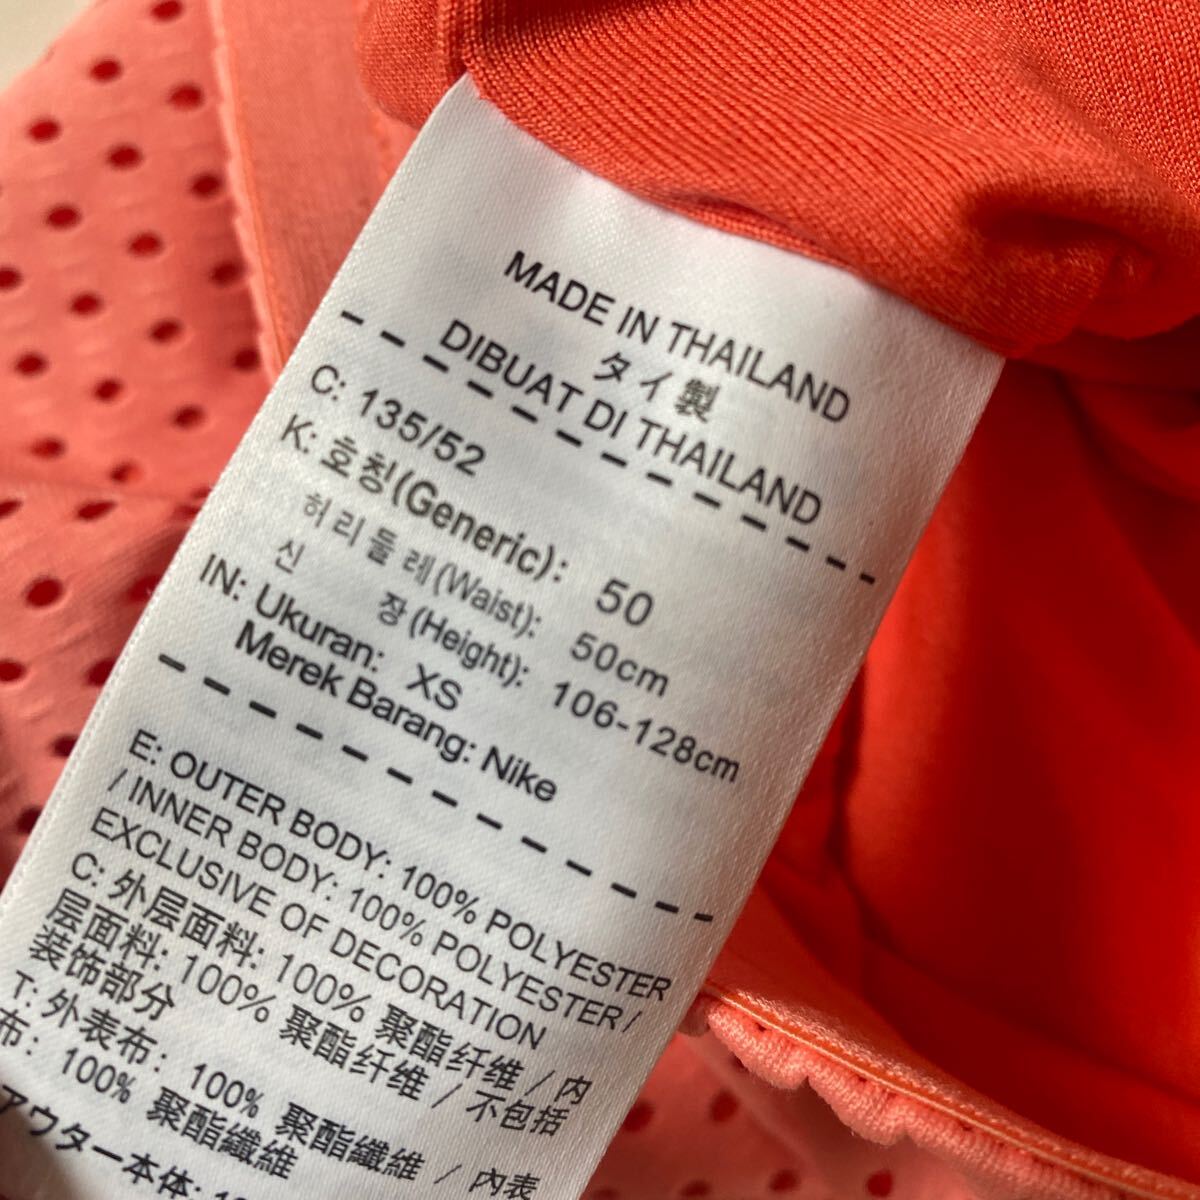  распродажа быстрое решение 1 иен Nike прекрасный товар сетка обработка шорты размер XS( запись 135|52) подкладка есть 